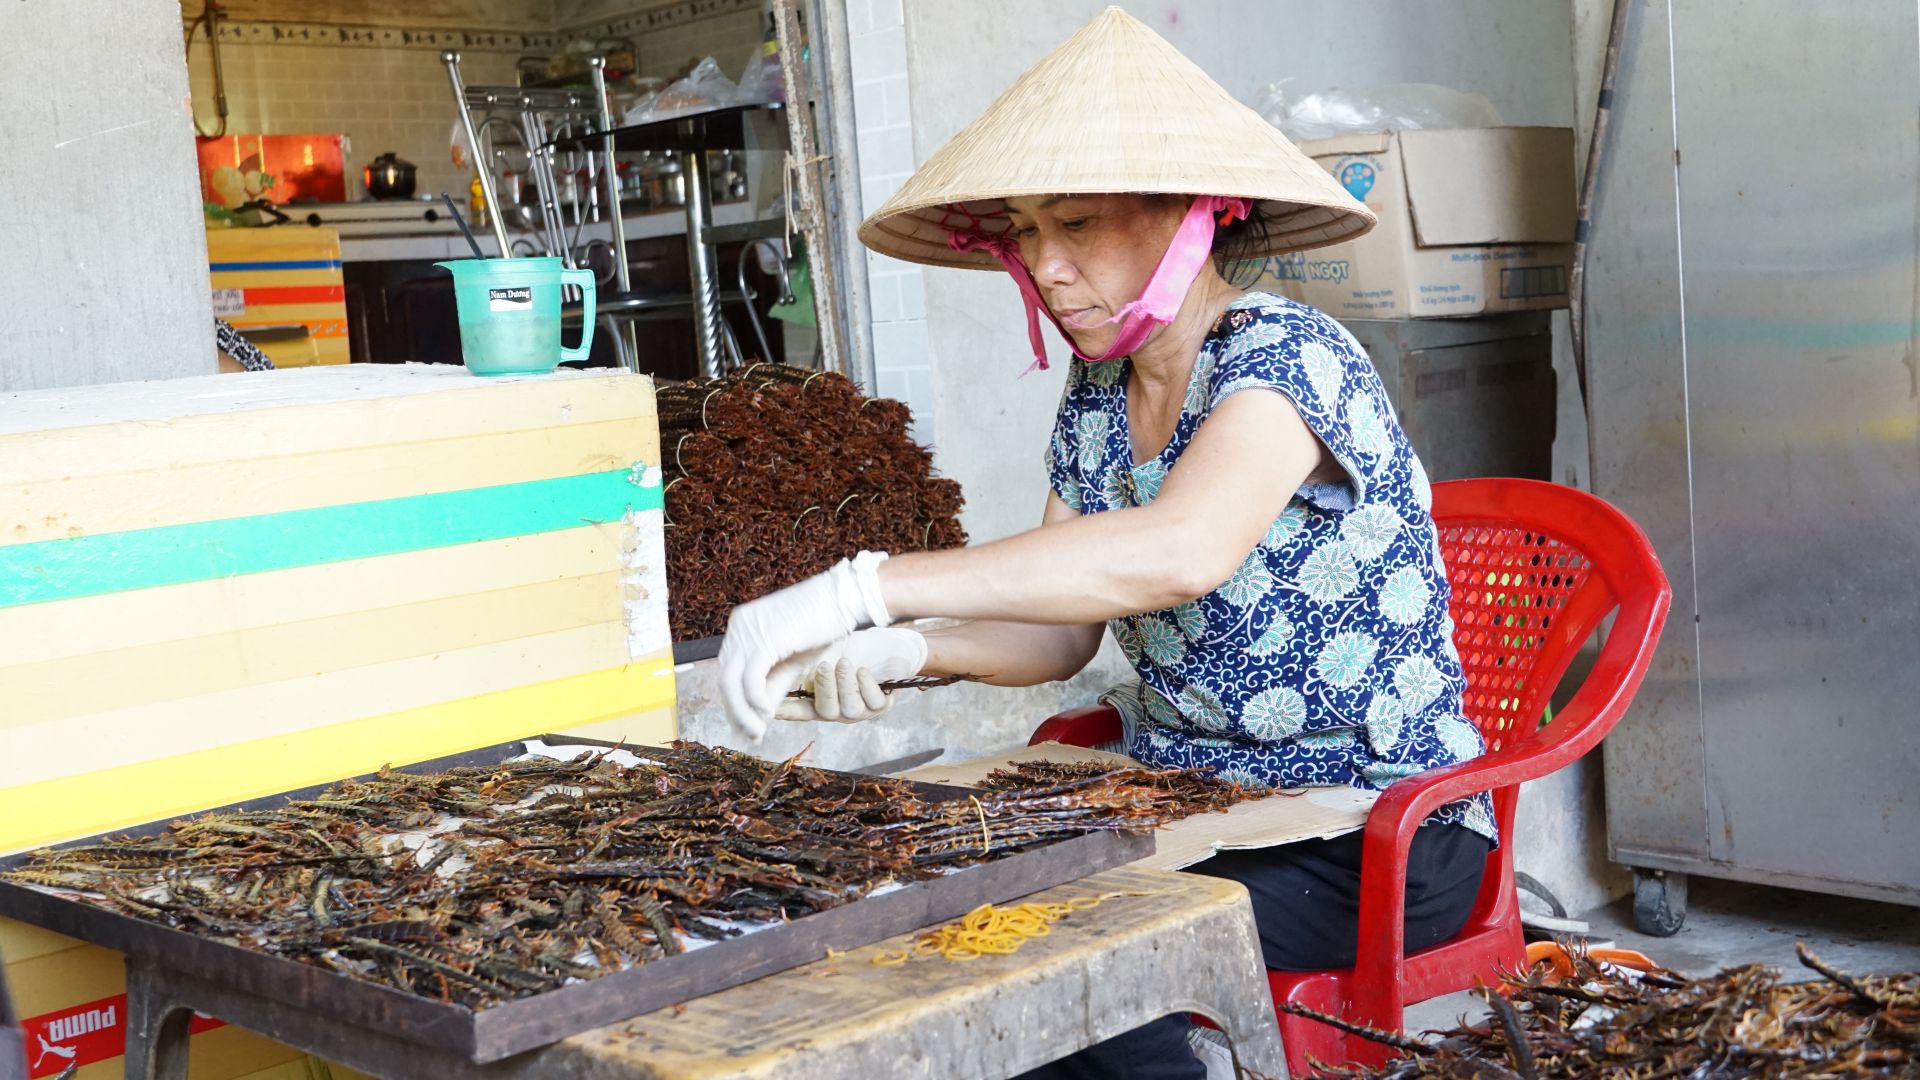 Tây Ninh: Nuôi loài nhiều chân, nghe tên đã thấy hãi hùng, 1kg giá không dưới 1,2 triệu đồng - Ảnh 2.